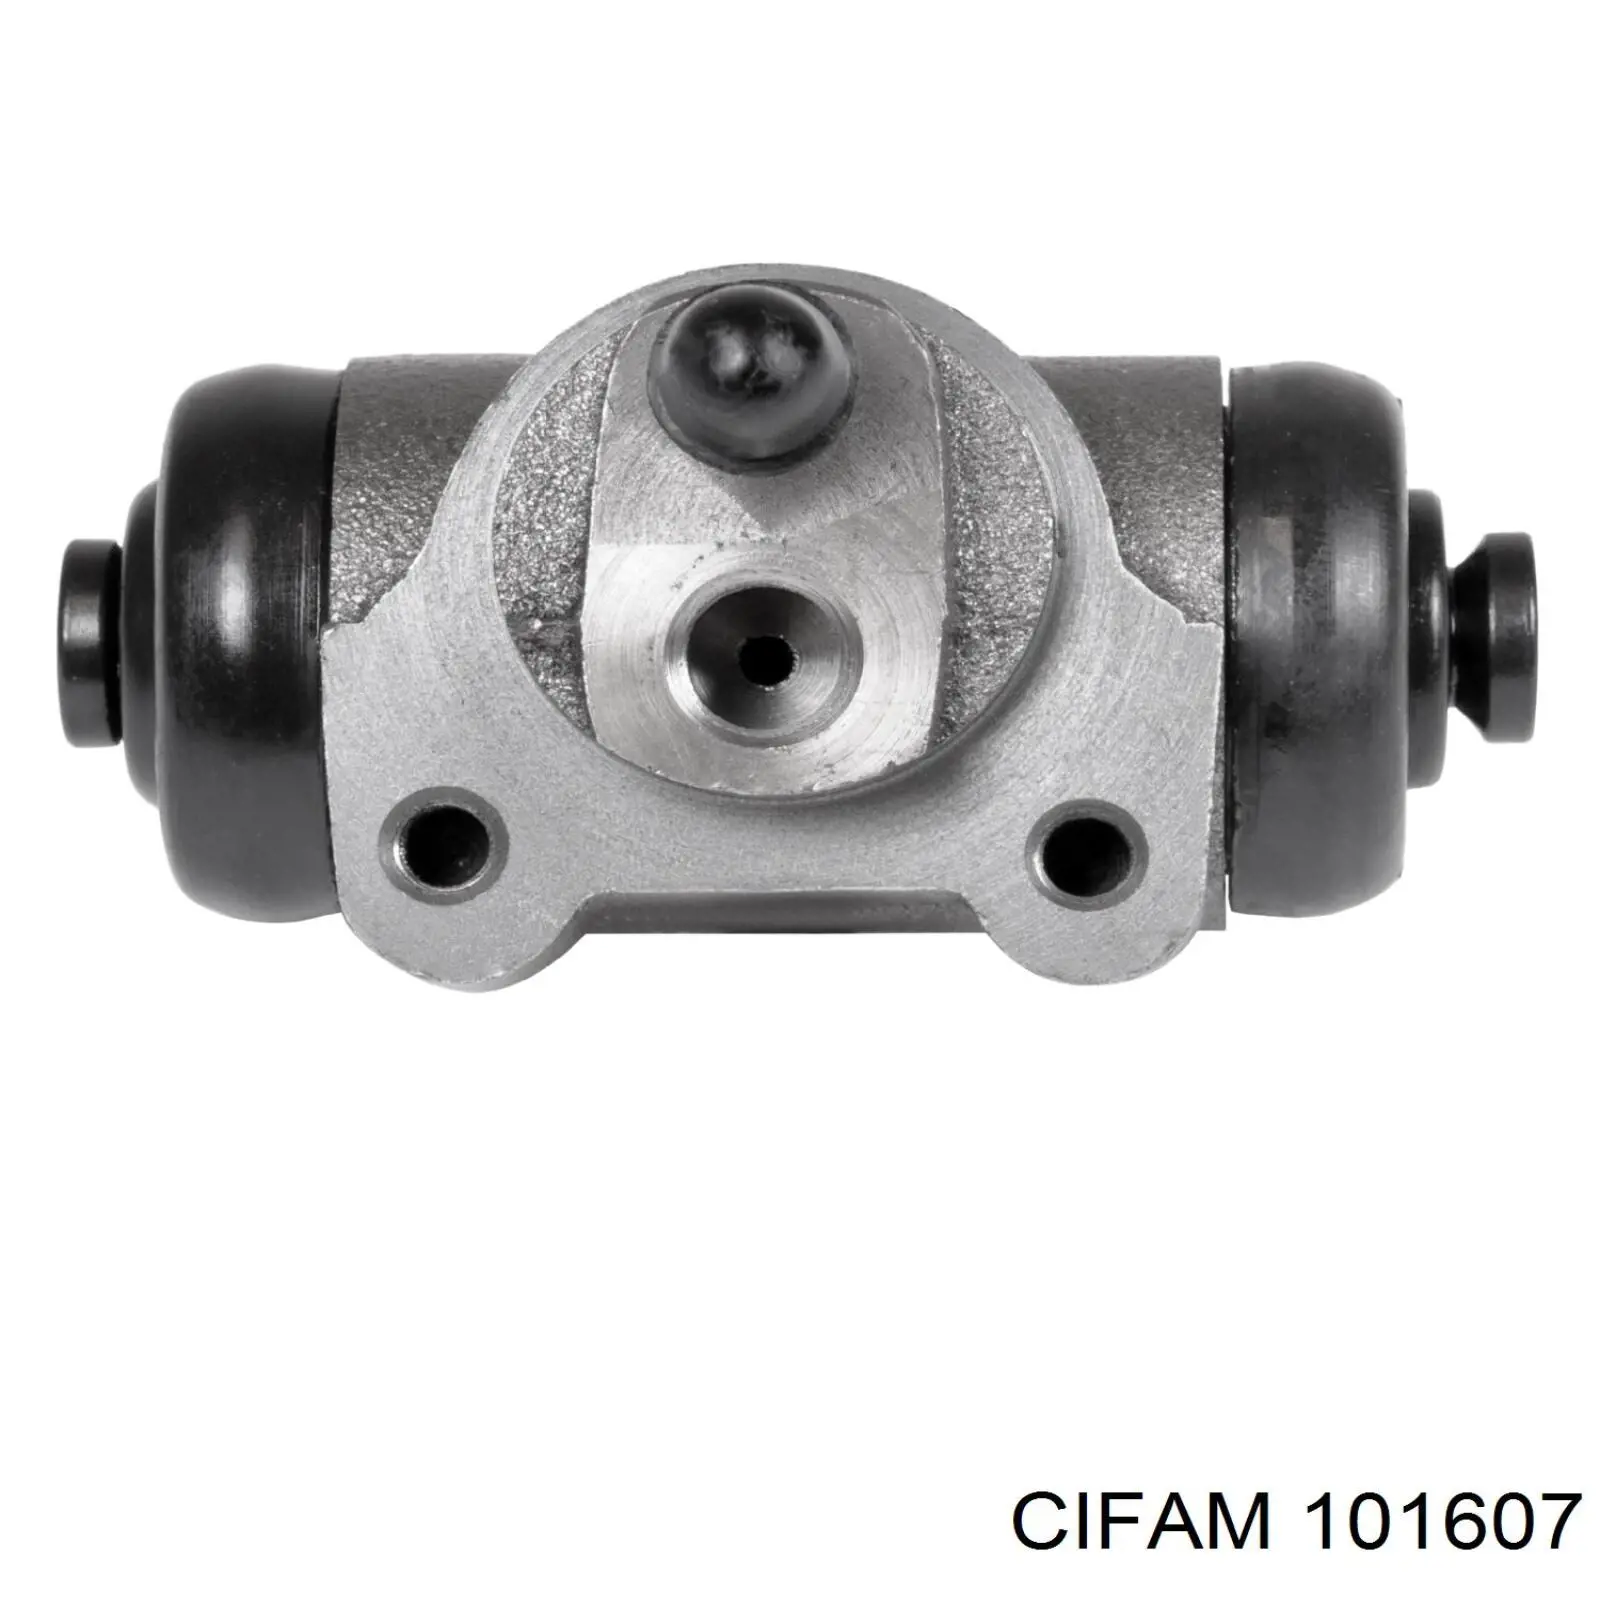 101-607 Cifam cilindro de freno de rueda trasero